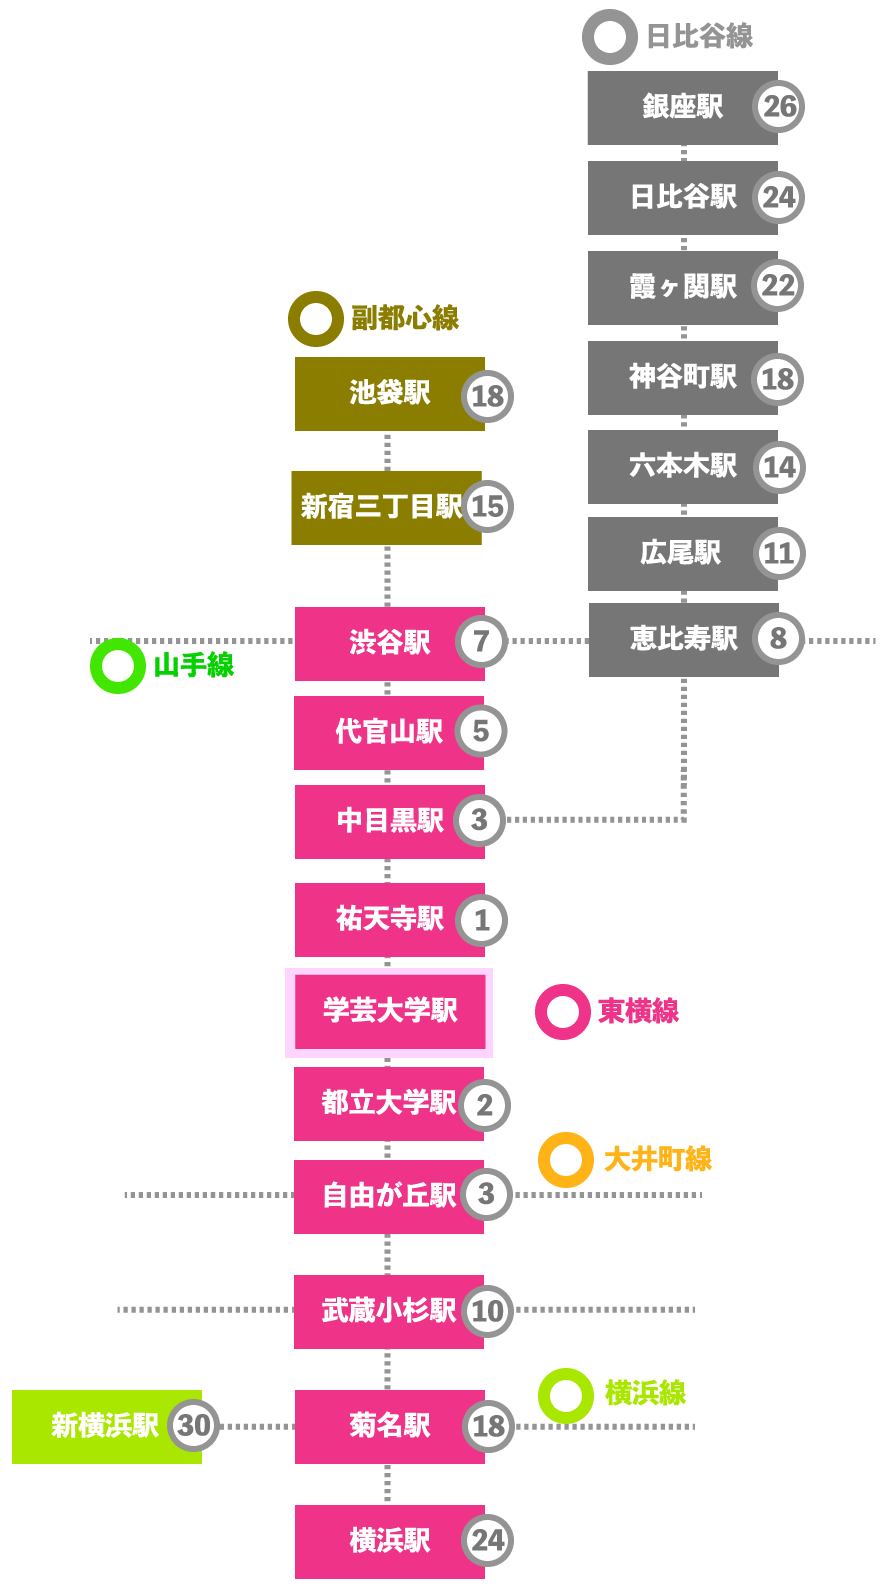 この画像は学芸大学駅を中心に東横線、副都市線、日比谷線、横浜線の各駅までの乗車時間をまとめた図です。